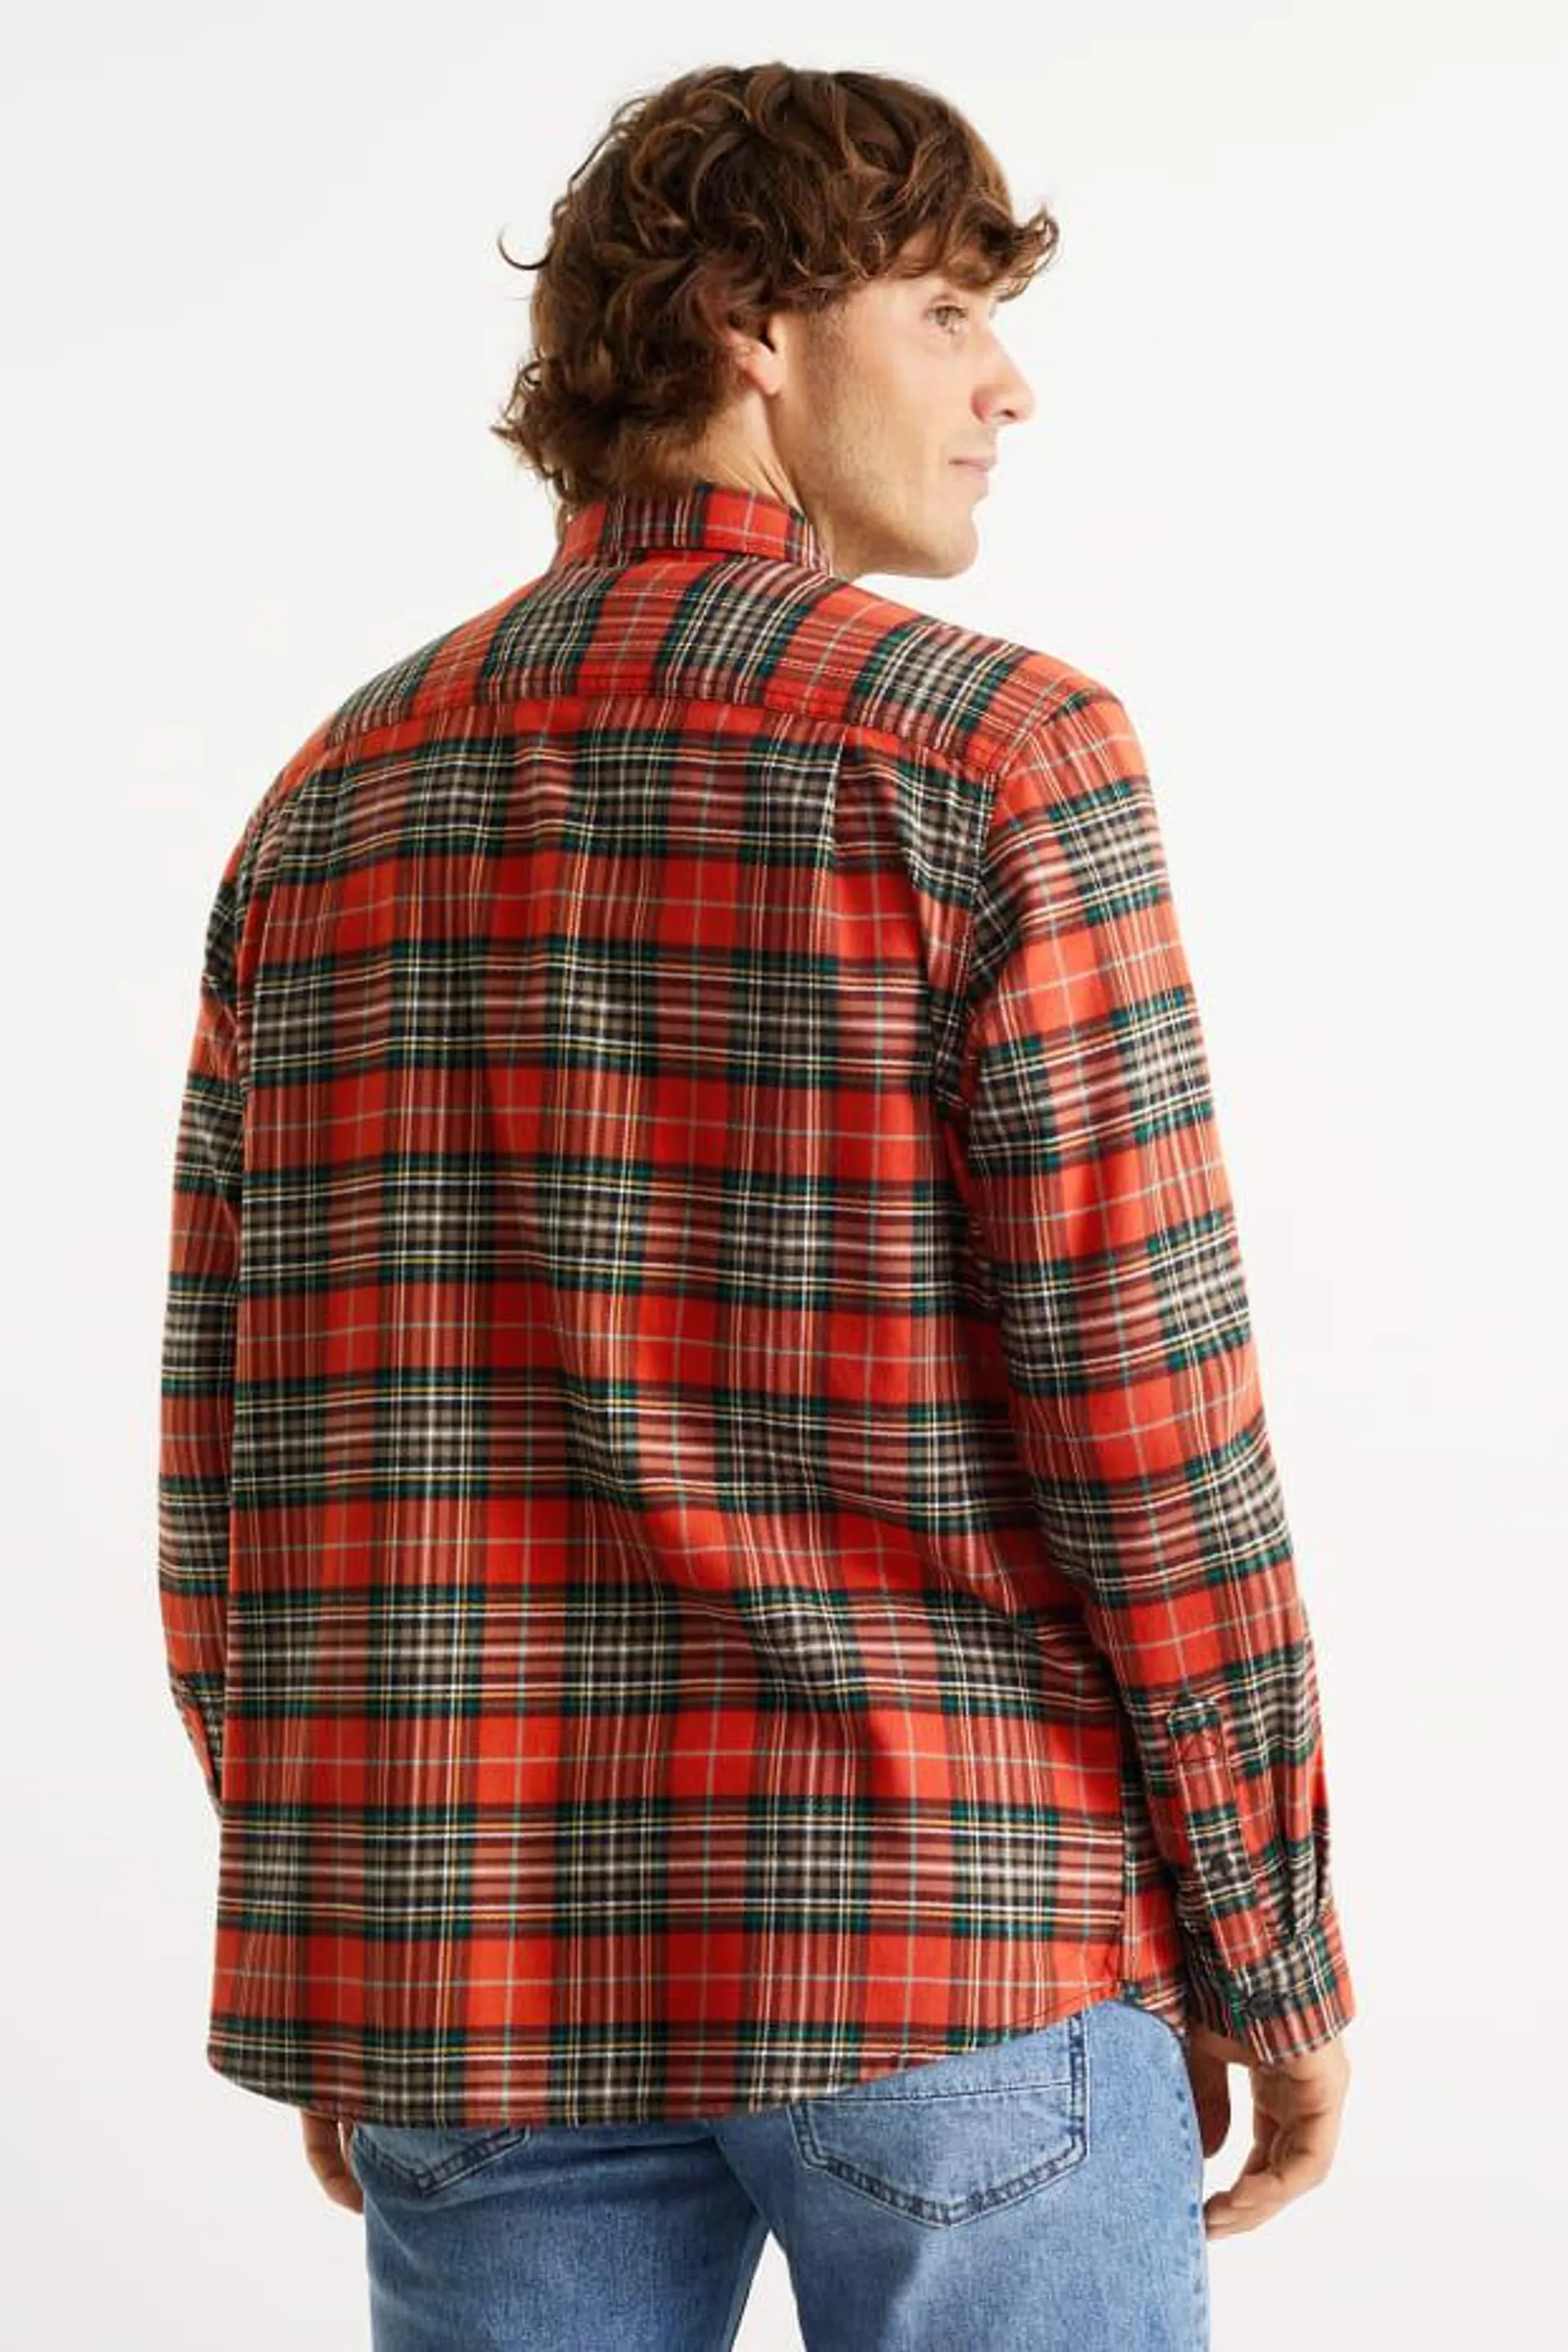 Flannel shirt - regular fit - kent collar - check